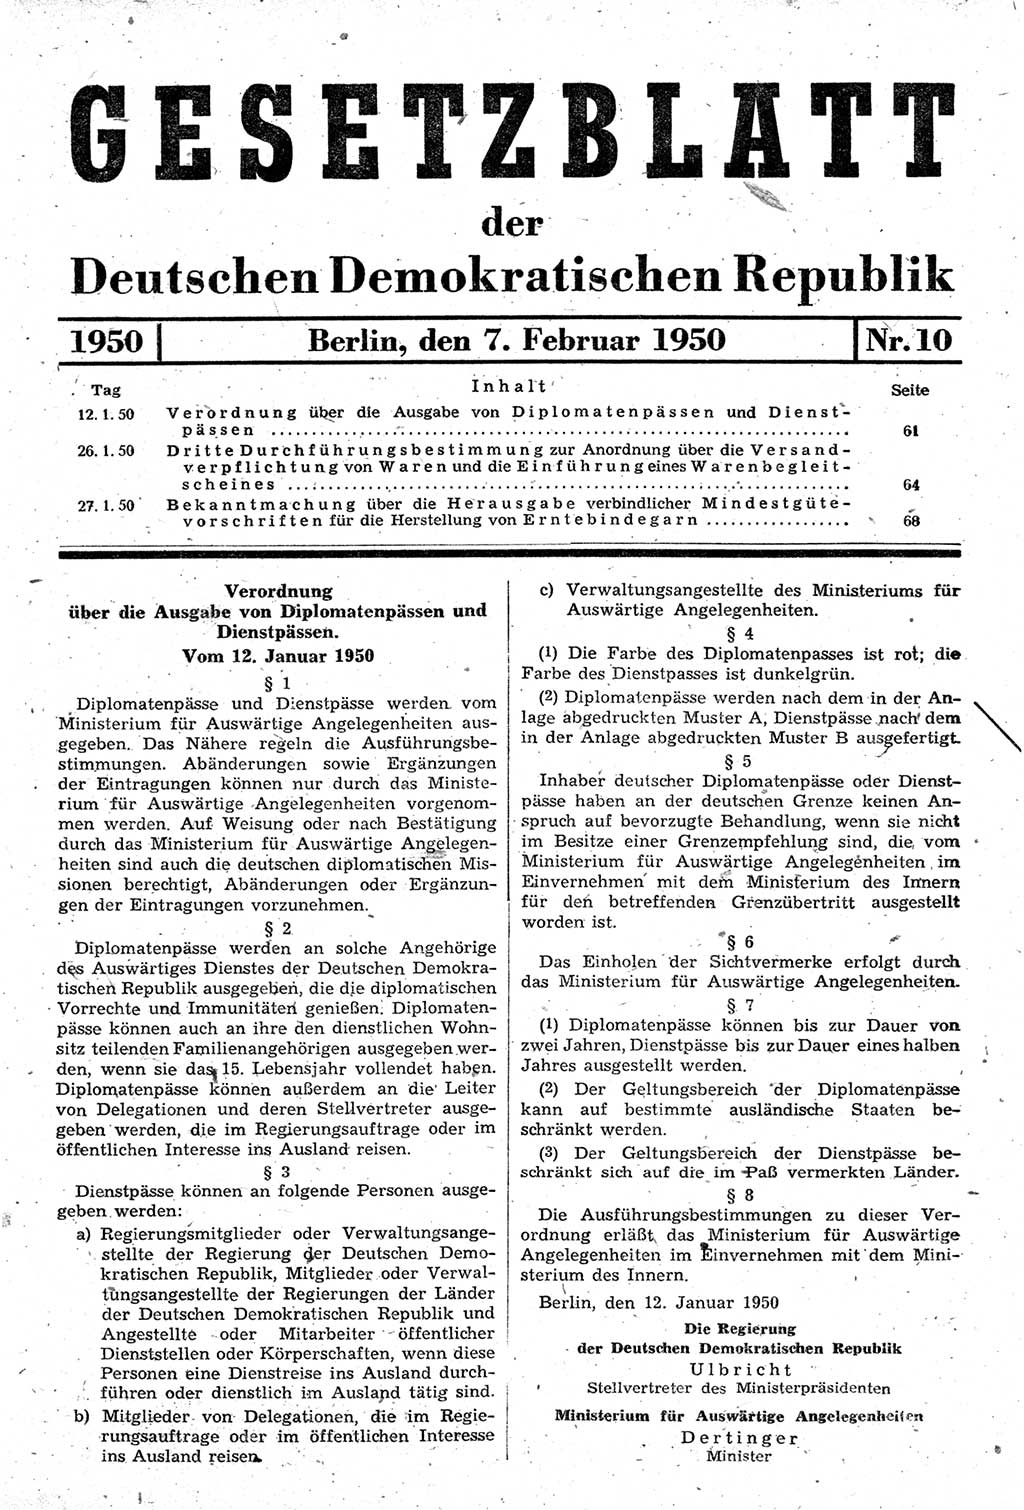 Gesetzblatt (GBl.) der Deutschen Demokratischen Republik (DDR) 1950, Seite 61 (GBl. DDR 1950, S. 61)